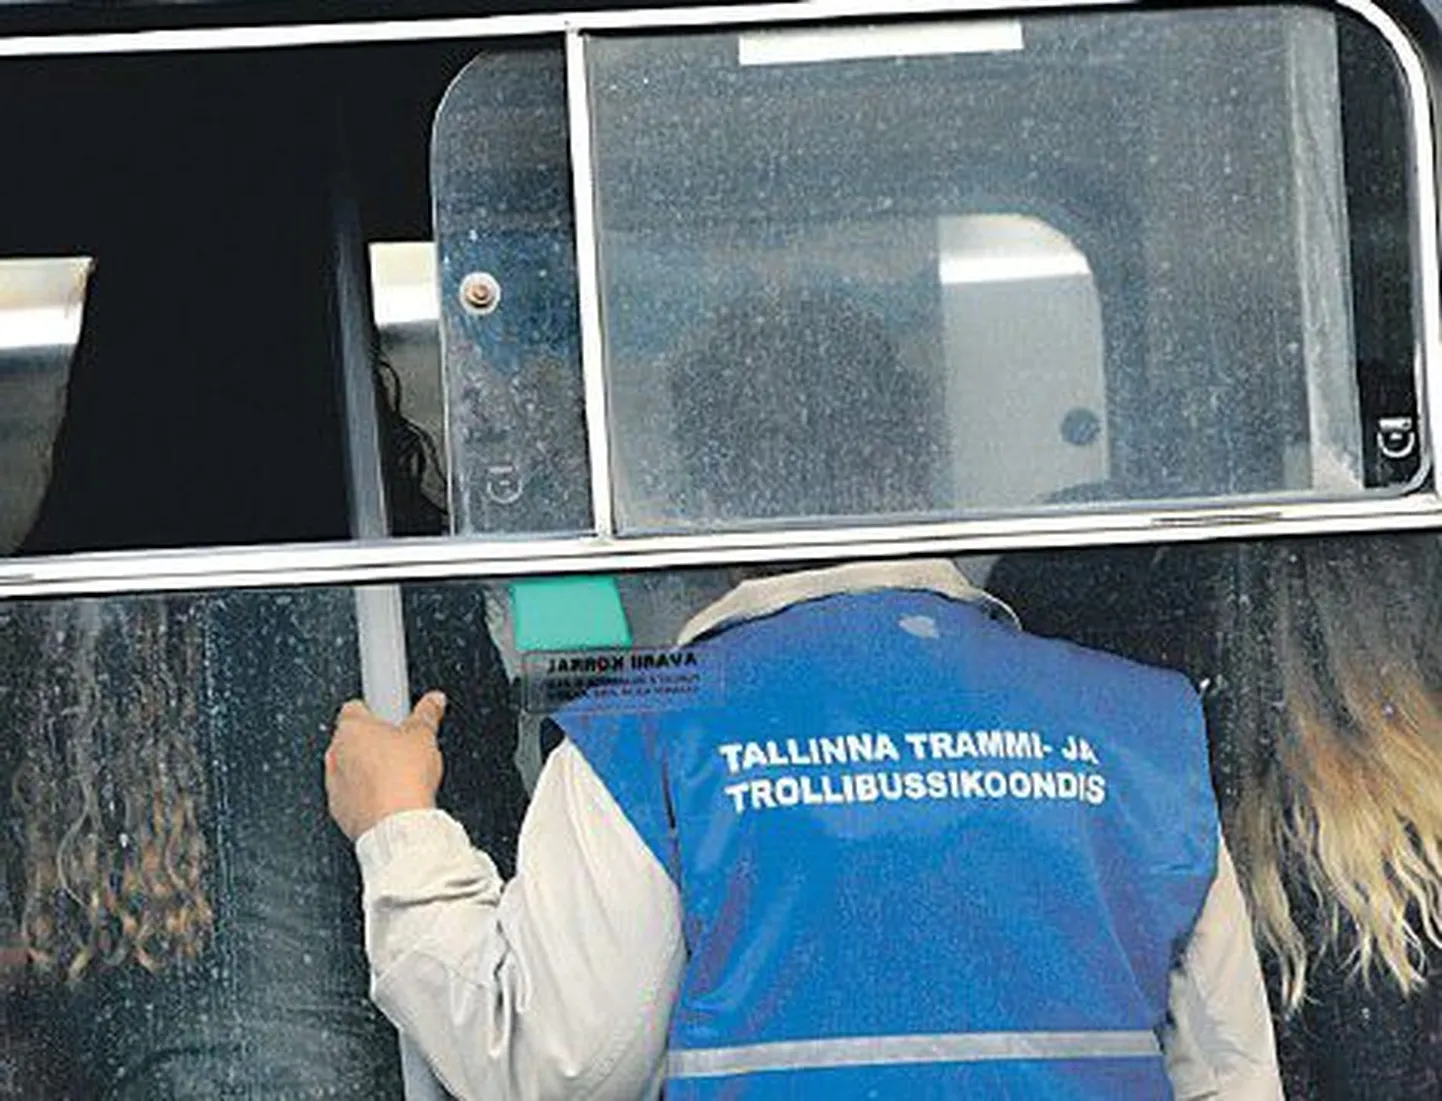 По мнению многих пассажиров, таллиннские кондукторы относятся к своей работе очень серьезно и ответственно.